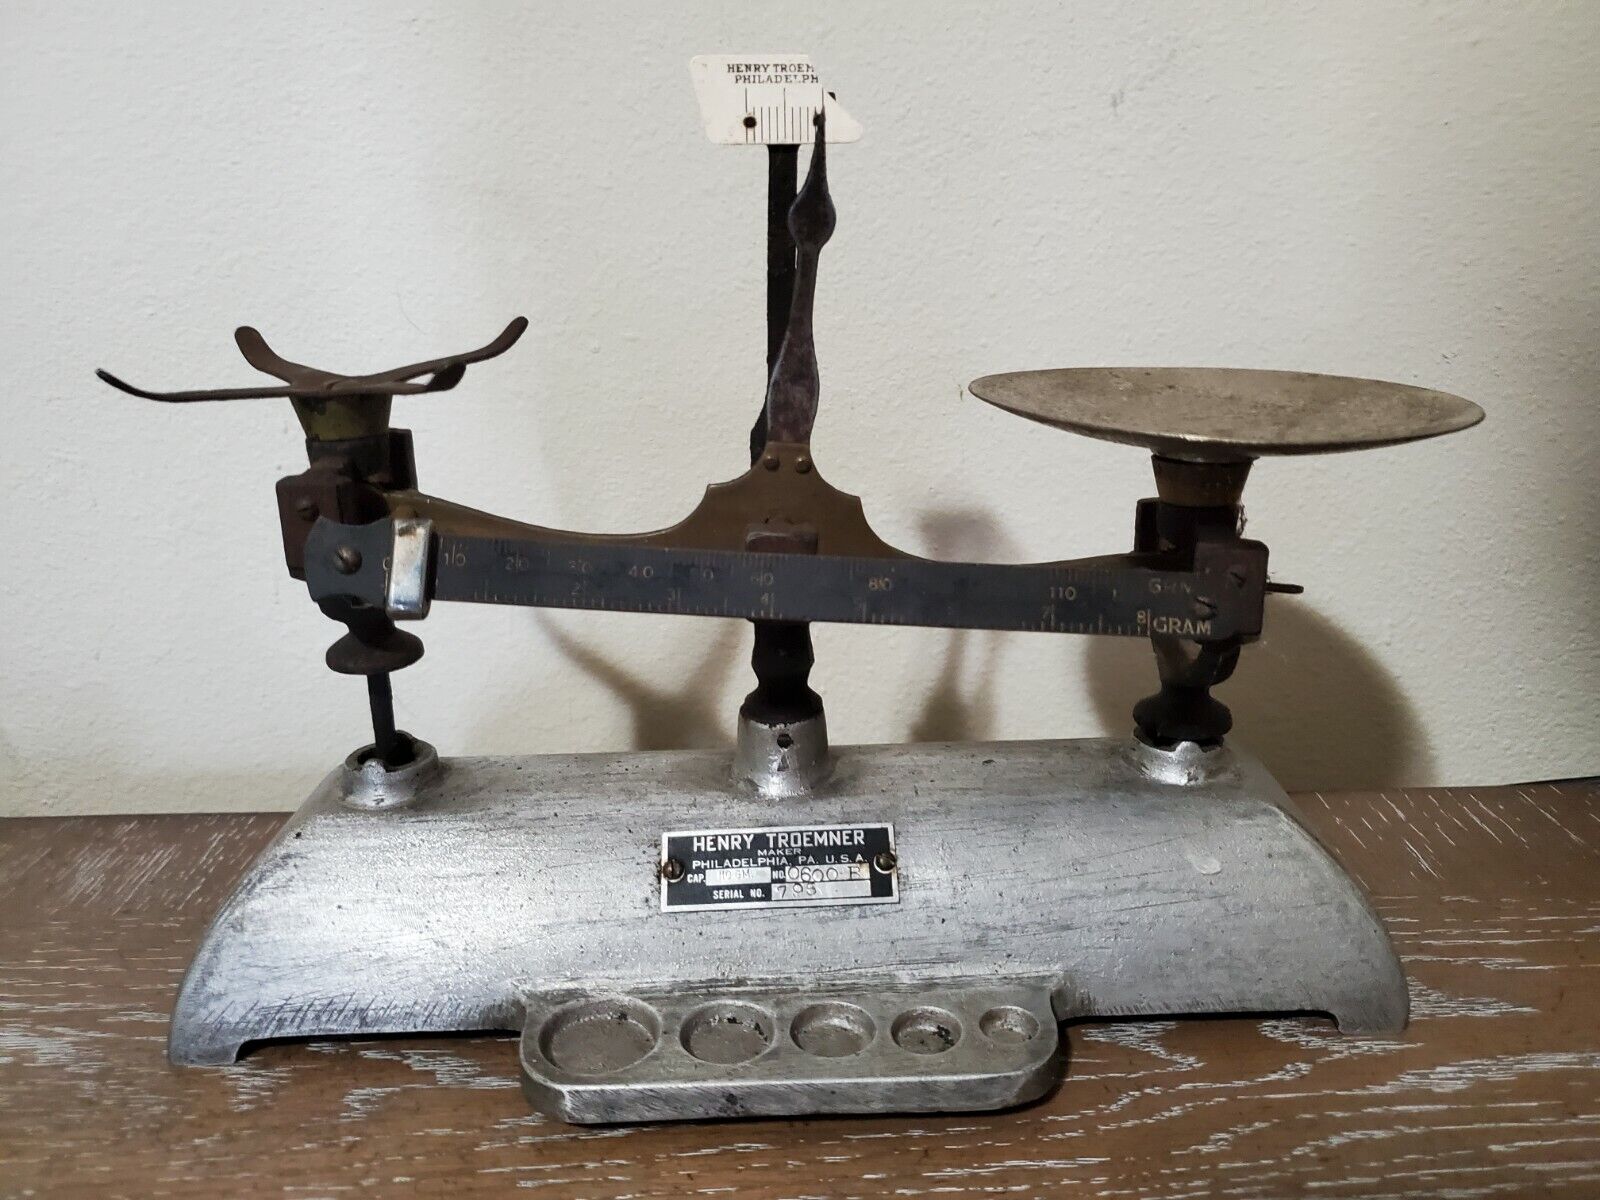 Vintage Antique Henry Troemner Scale 